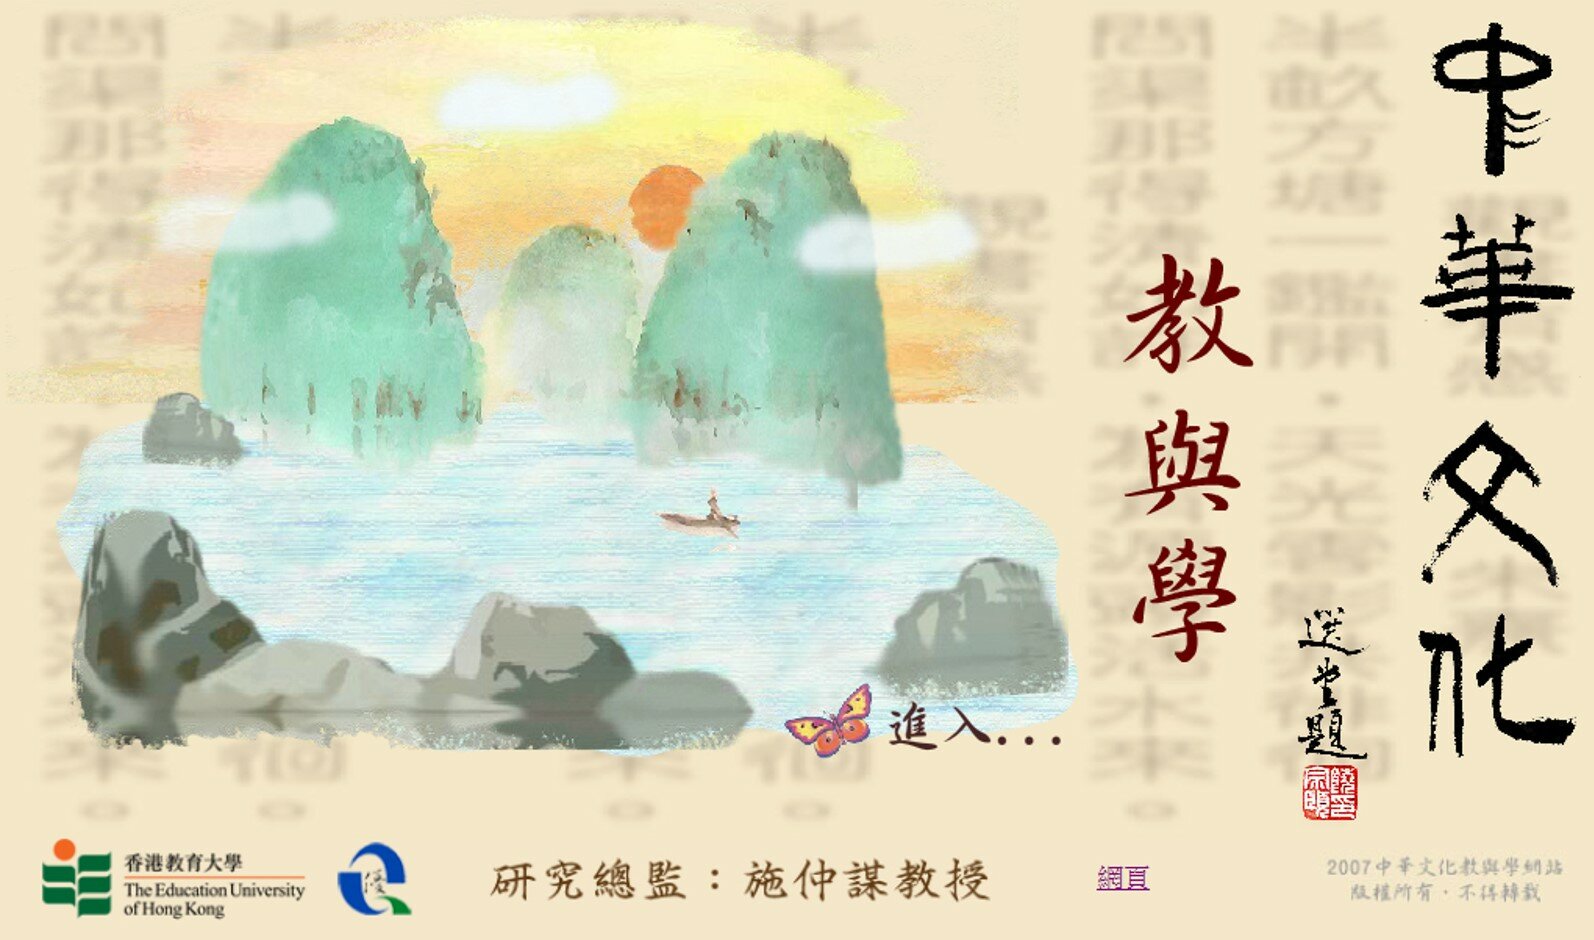 中華文化教與學網站